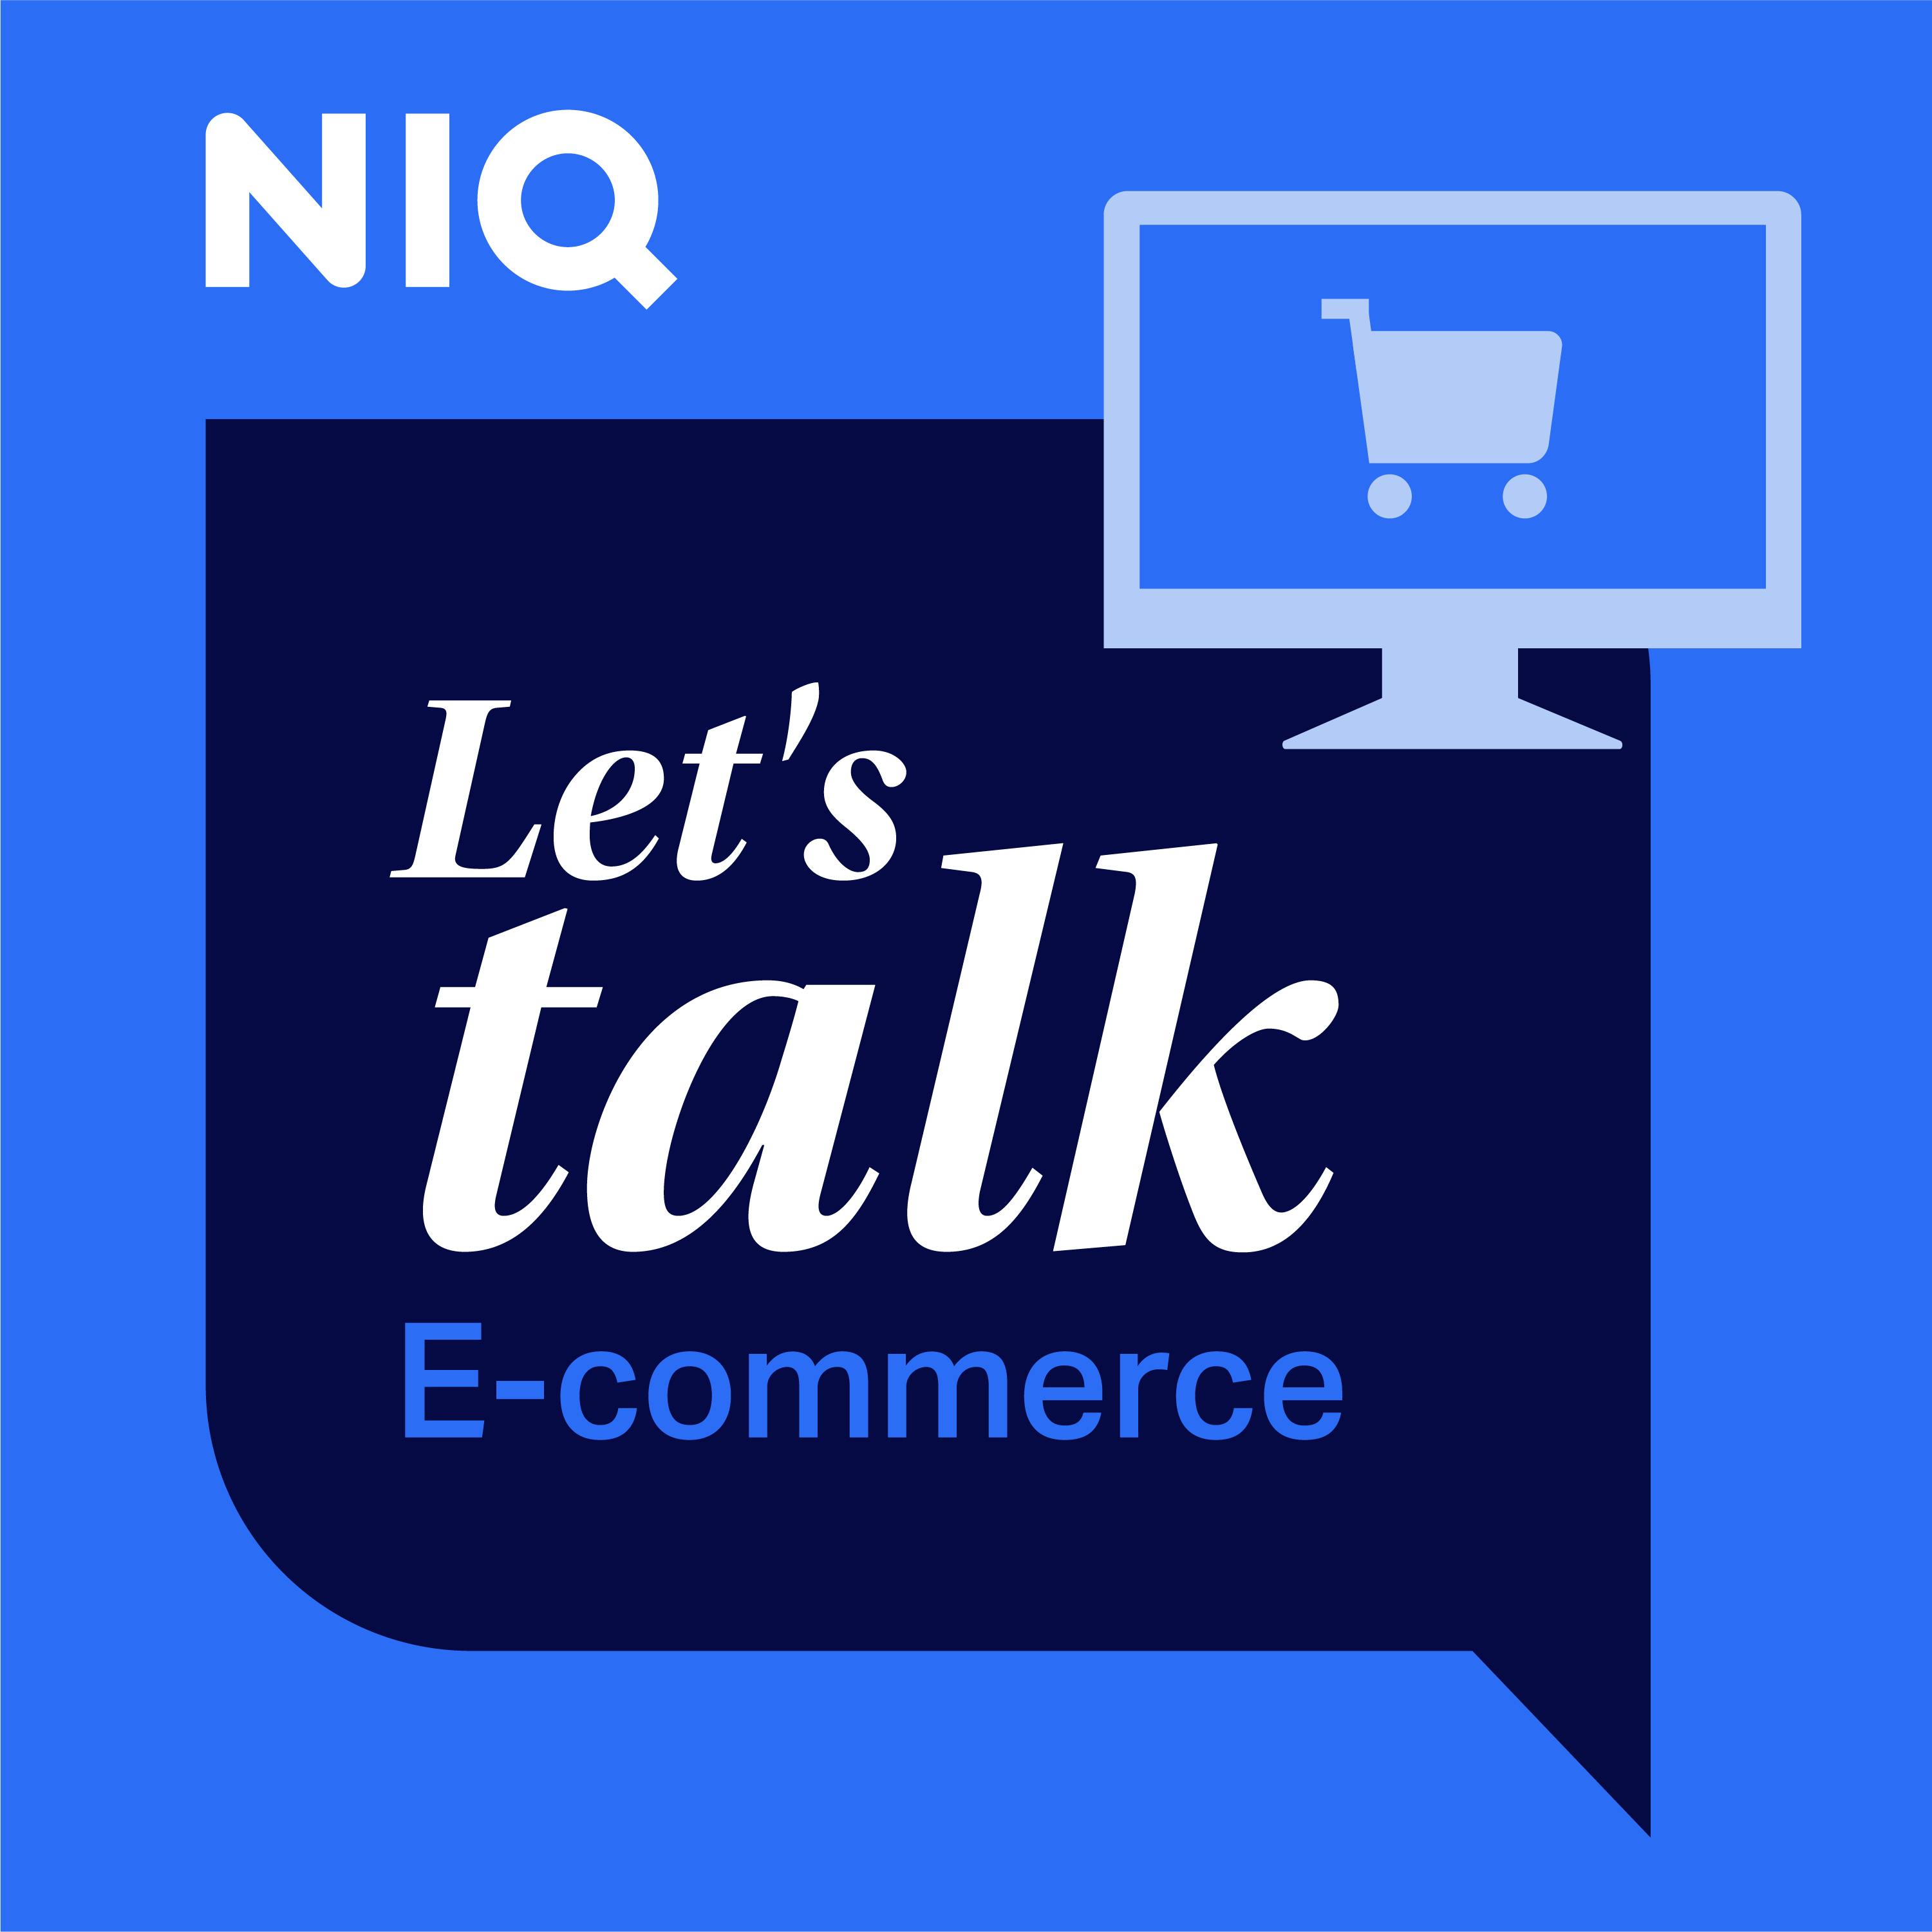 Episode #1: E-commerce trends around the globe